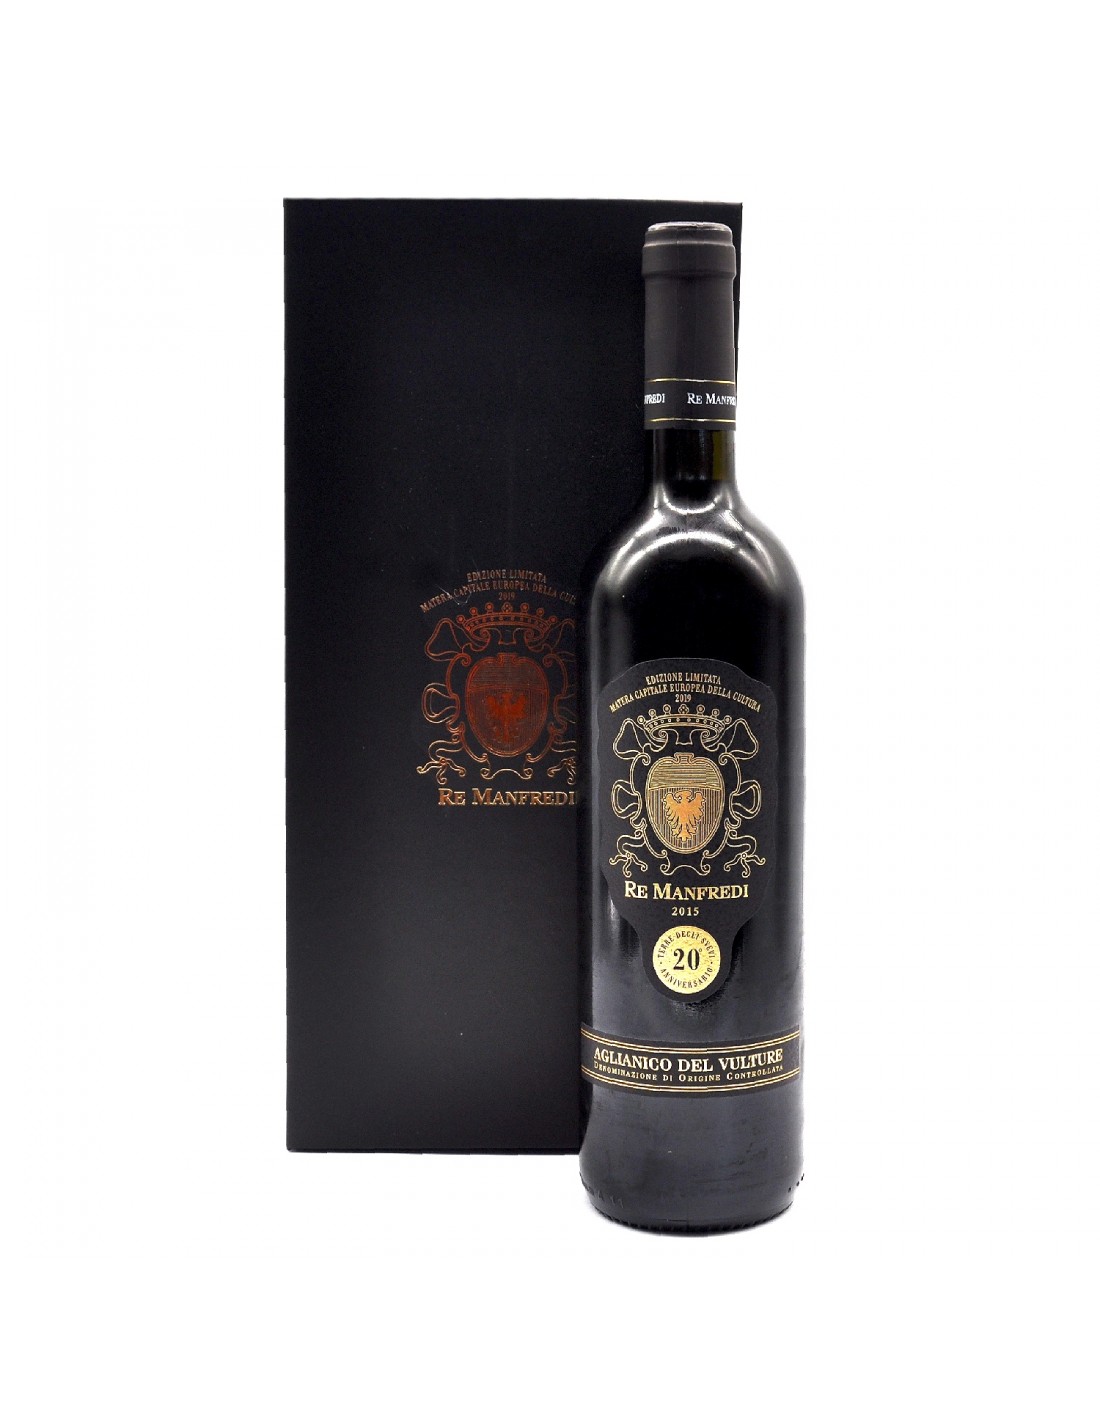 Vin rosu, Aglianico, Re Manfredi Vulture, 0.75L, 13% alc., Italia